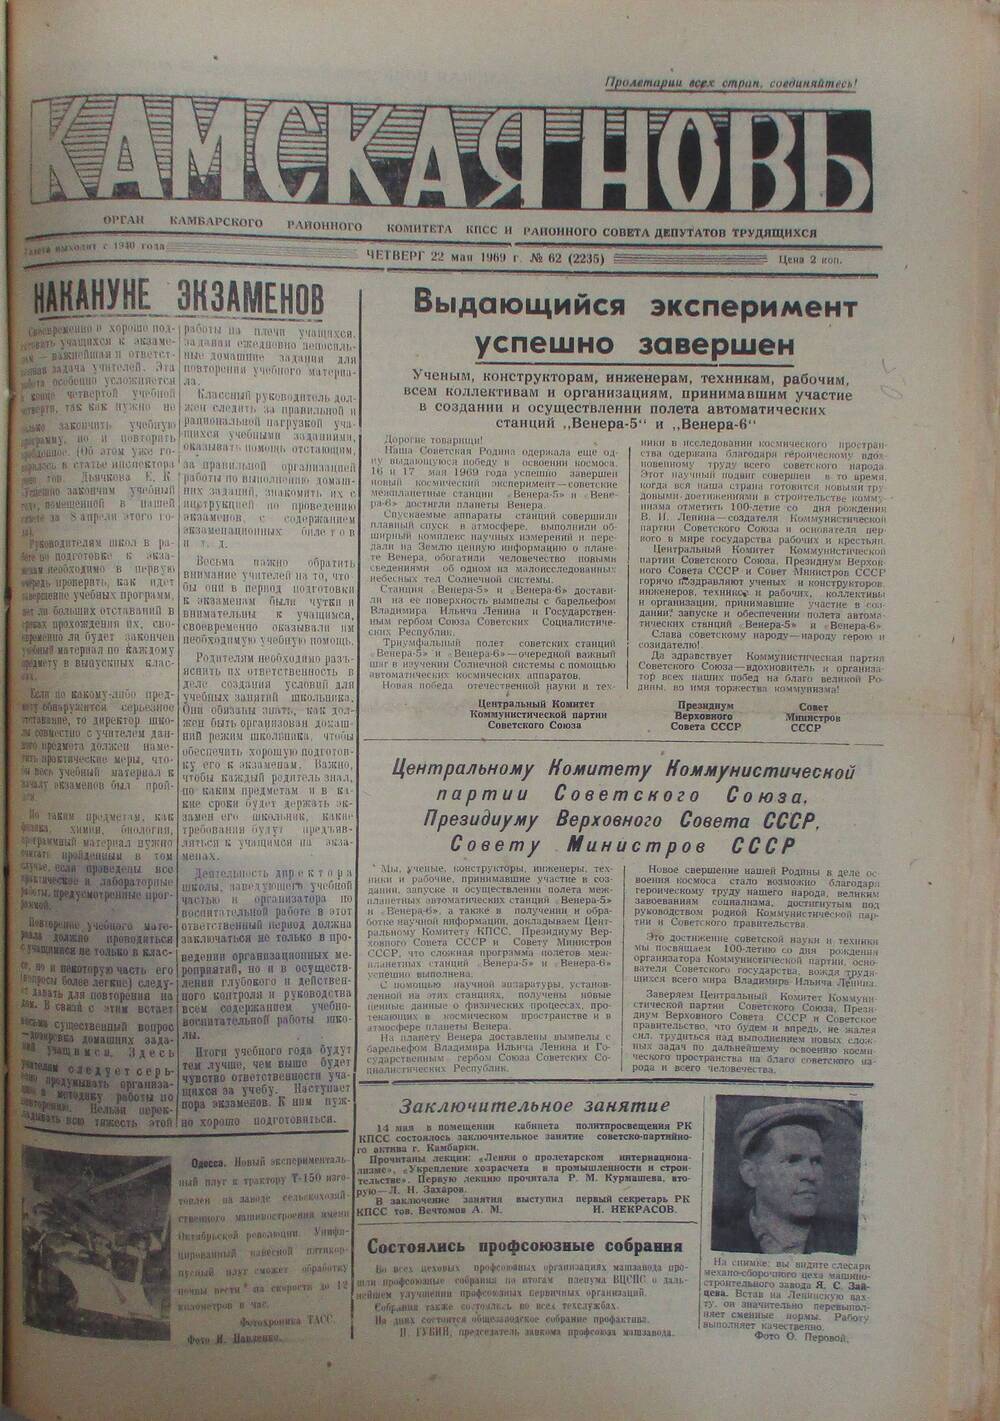 Газеты Камская новь за 1969 год, орган Камбарского райсовета и  РККПСС, с №1 по №66, с №68 по №156. №62.